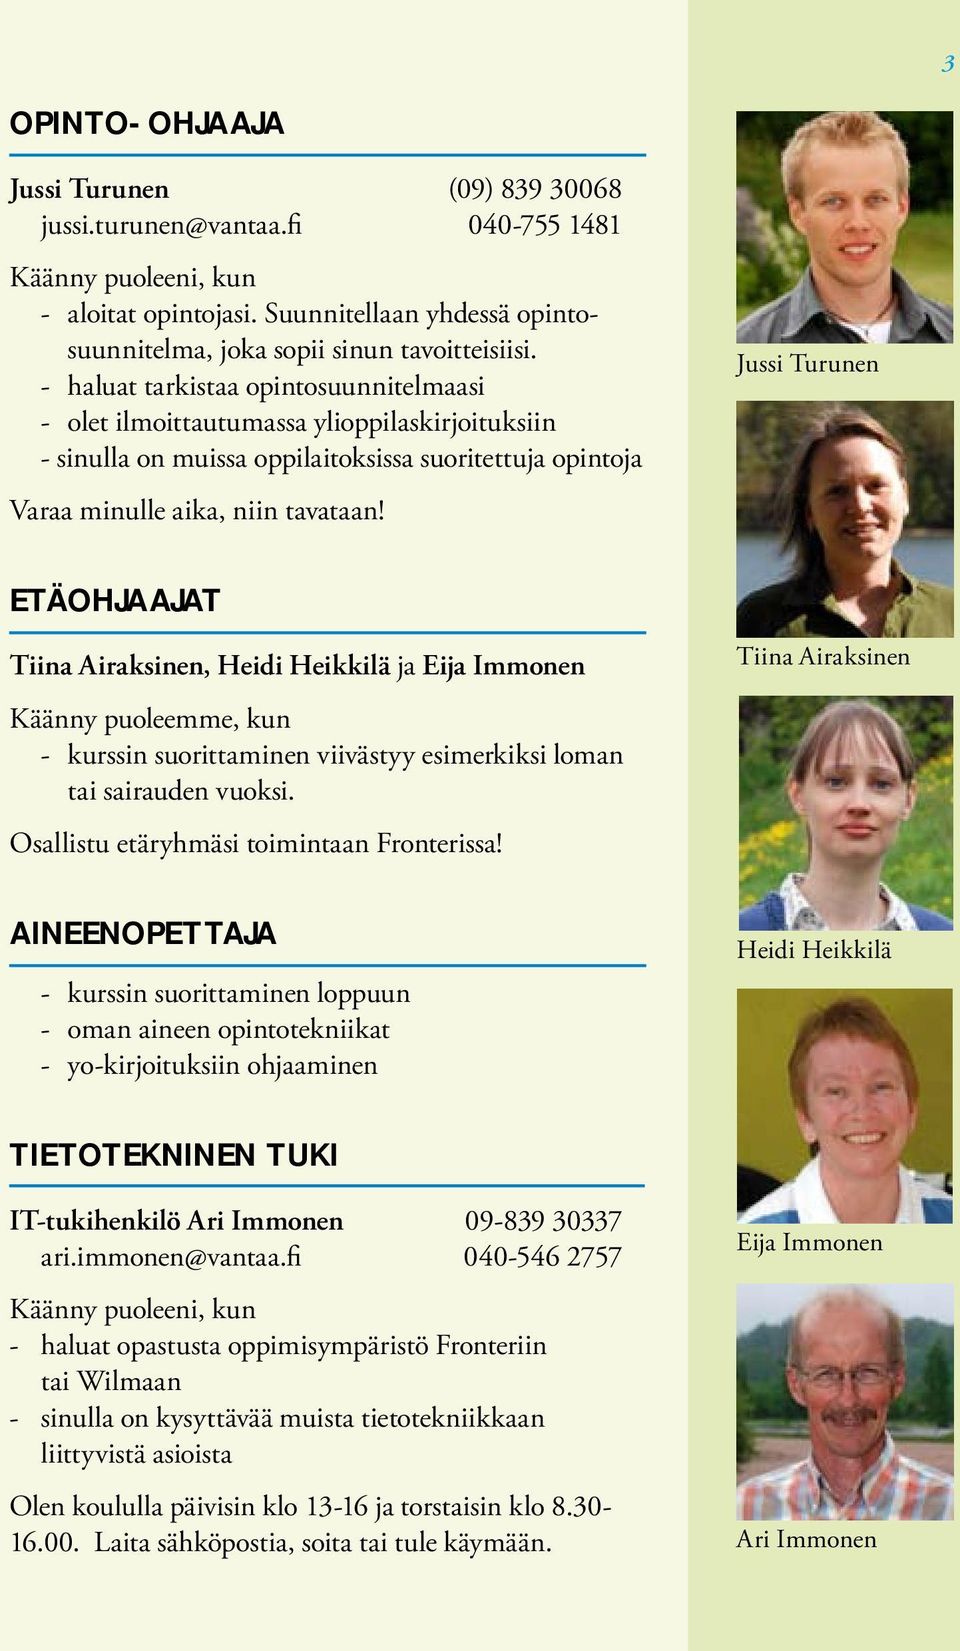 Jussi Turunen ETÄOHJAAJAT Tiina Airaksinen, Heidi Heikkilä ja Eija Immonen Käänny puoleemme, kun - kurssin suorittaminen viivästyy esimerkiksi loman tai sairauden vuoksi.